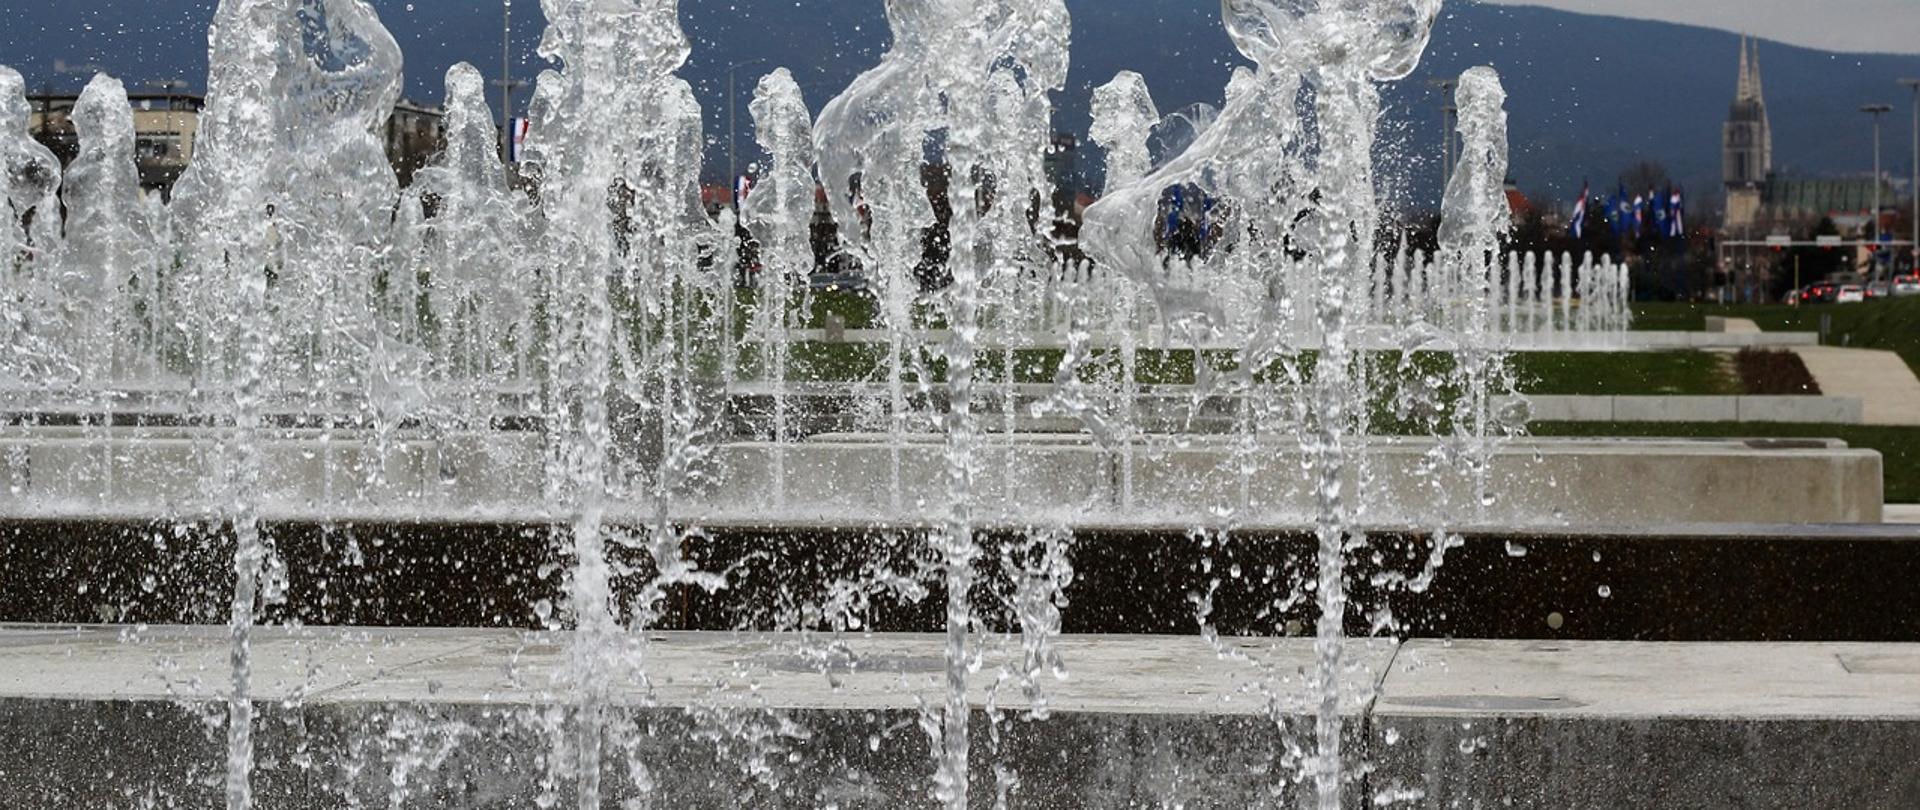 zdjęcie przedstawia fontannę, na pierwszym planie tryskające cztery strumienie wody, na drugim planie kolejne pięć strumieni wody, w oddali góry oraz zachmurzone niebo